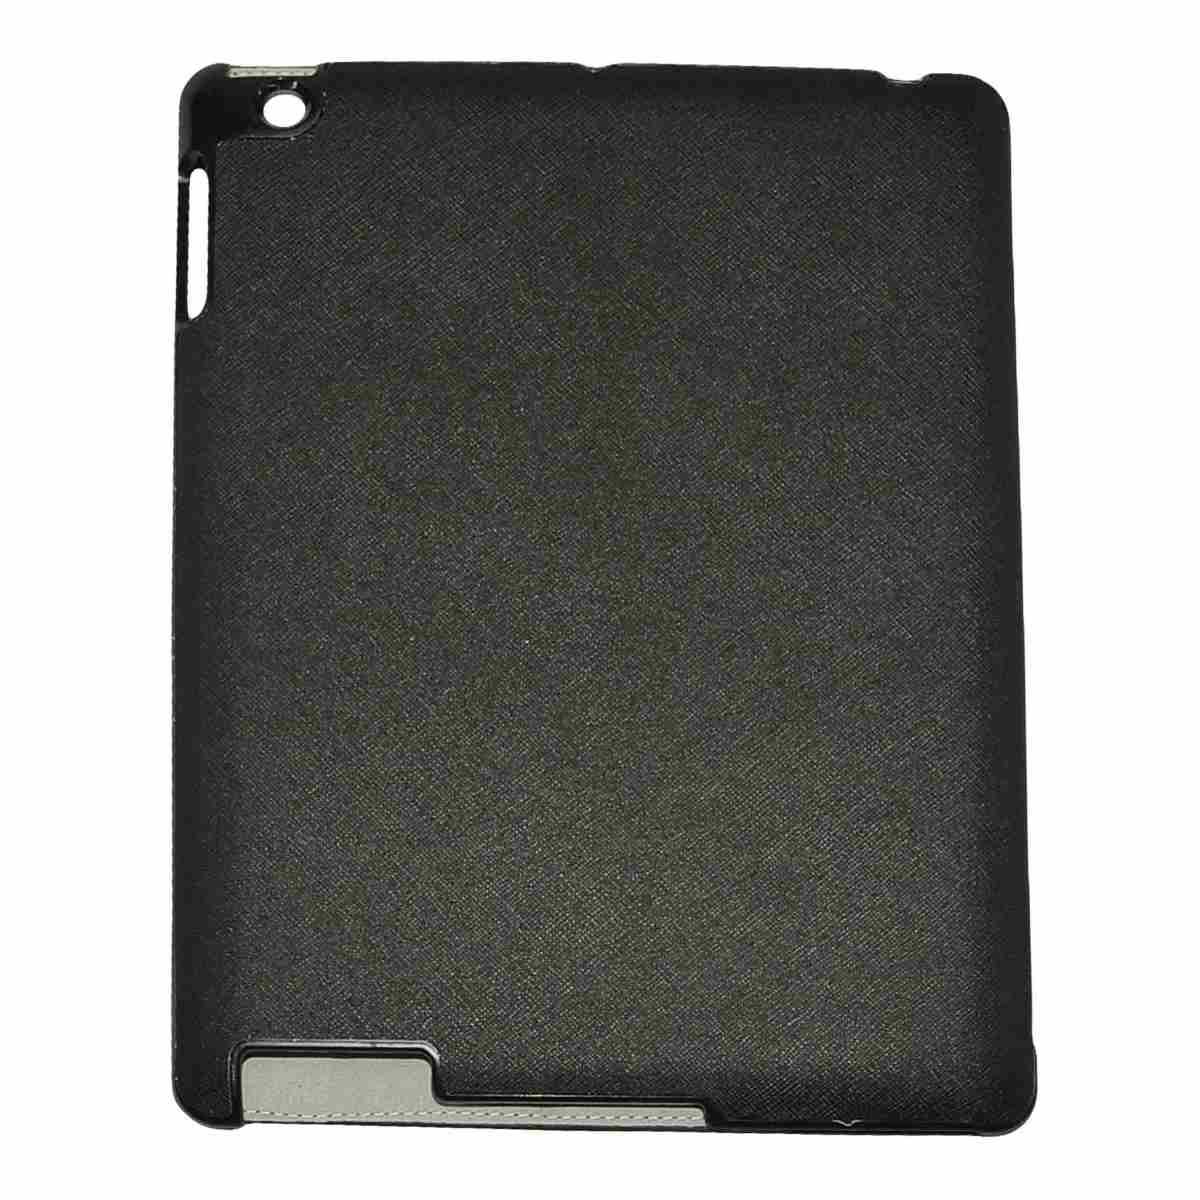 Cover Tablet Ipad 2/3 Ecopelle Nero cm.24,5x19x1